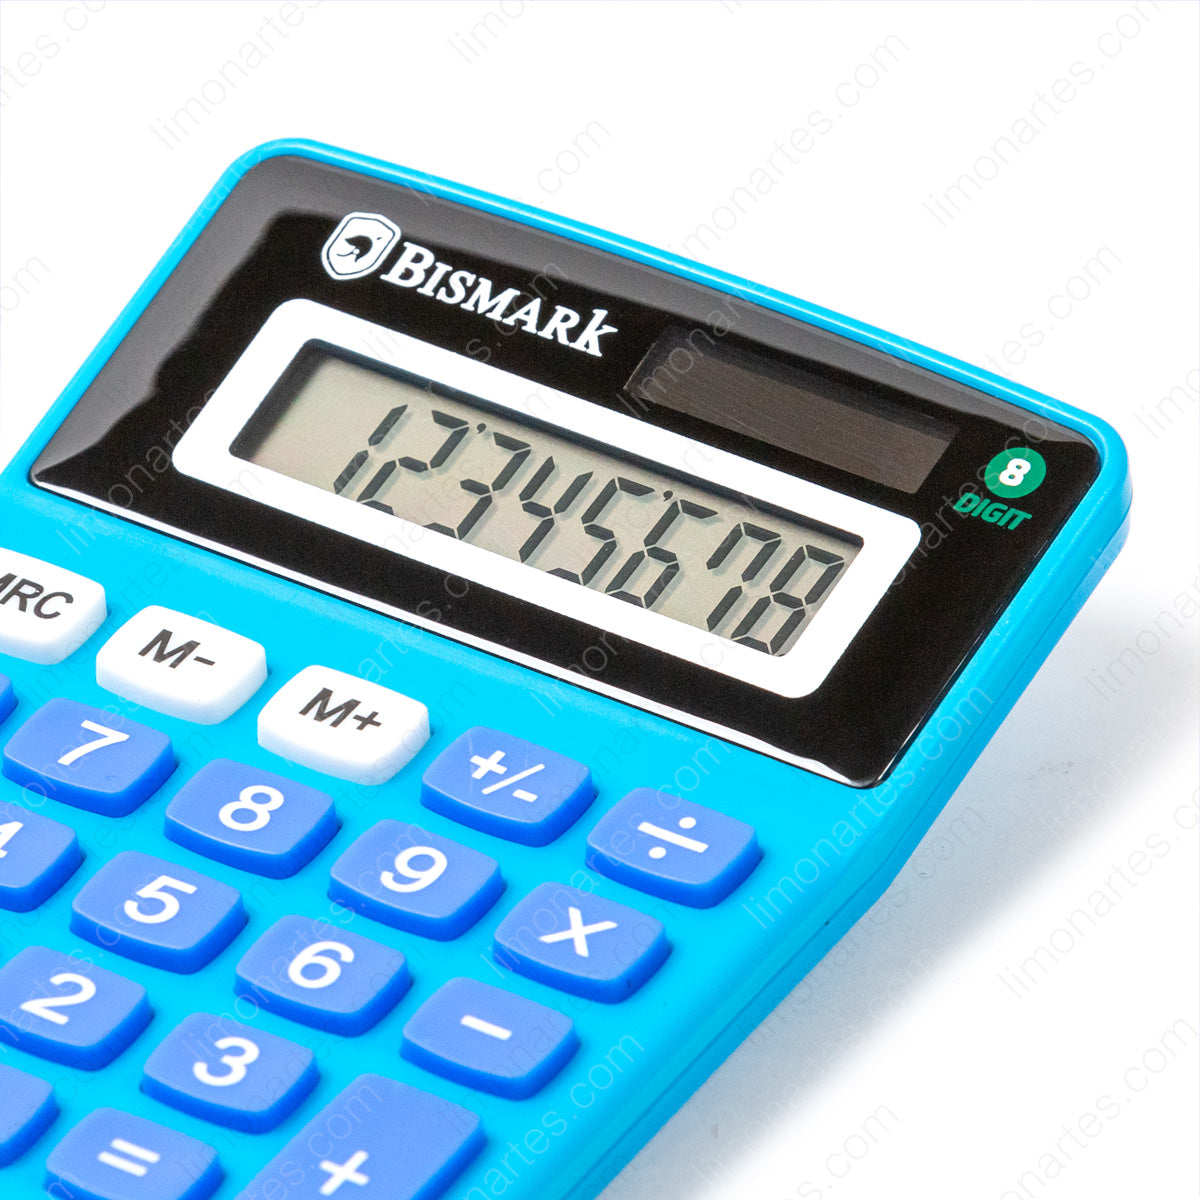 Bismark Calculadoras 8 digit/ Varios colores disponibles